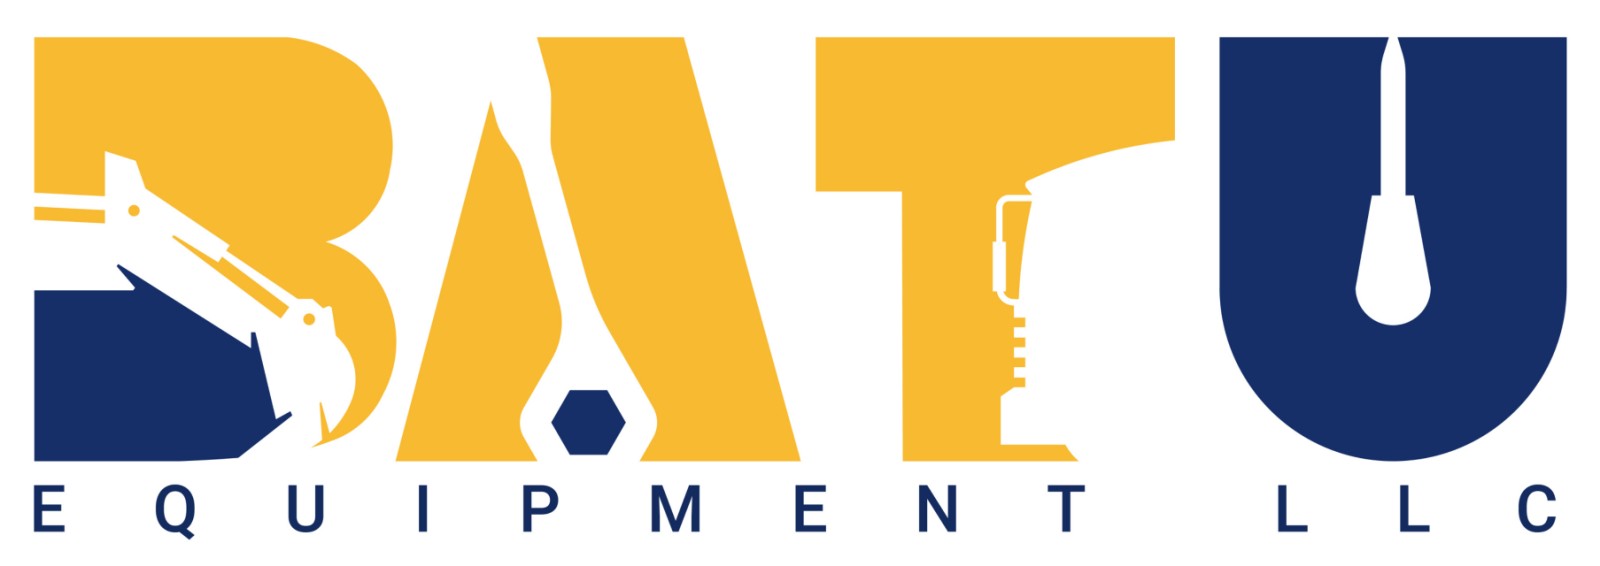 Batu equipment LLC